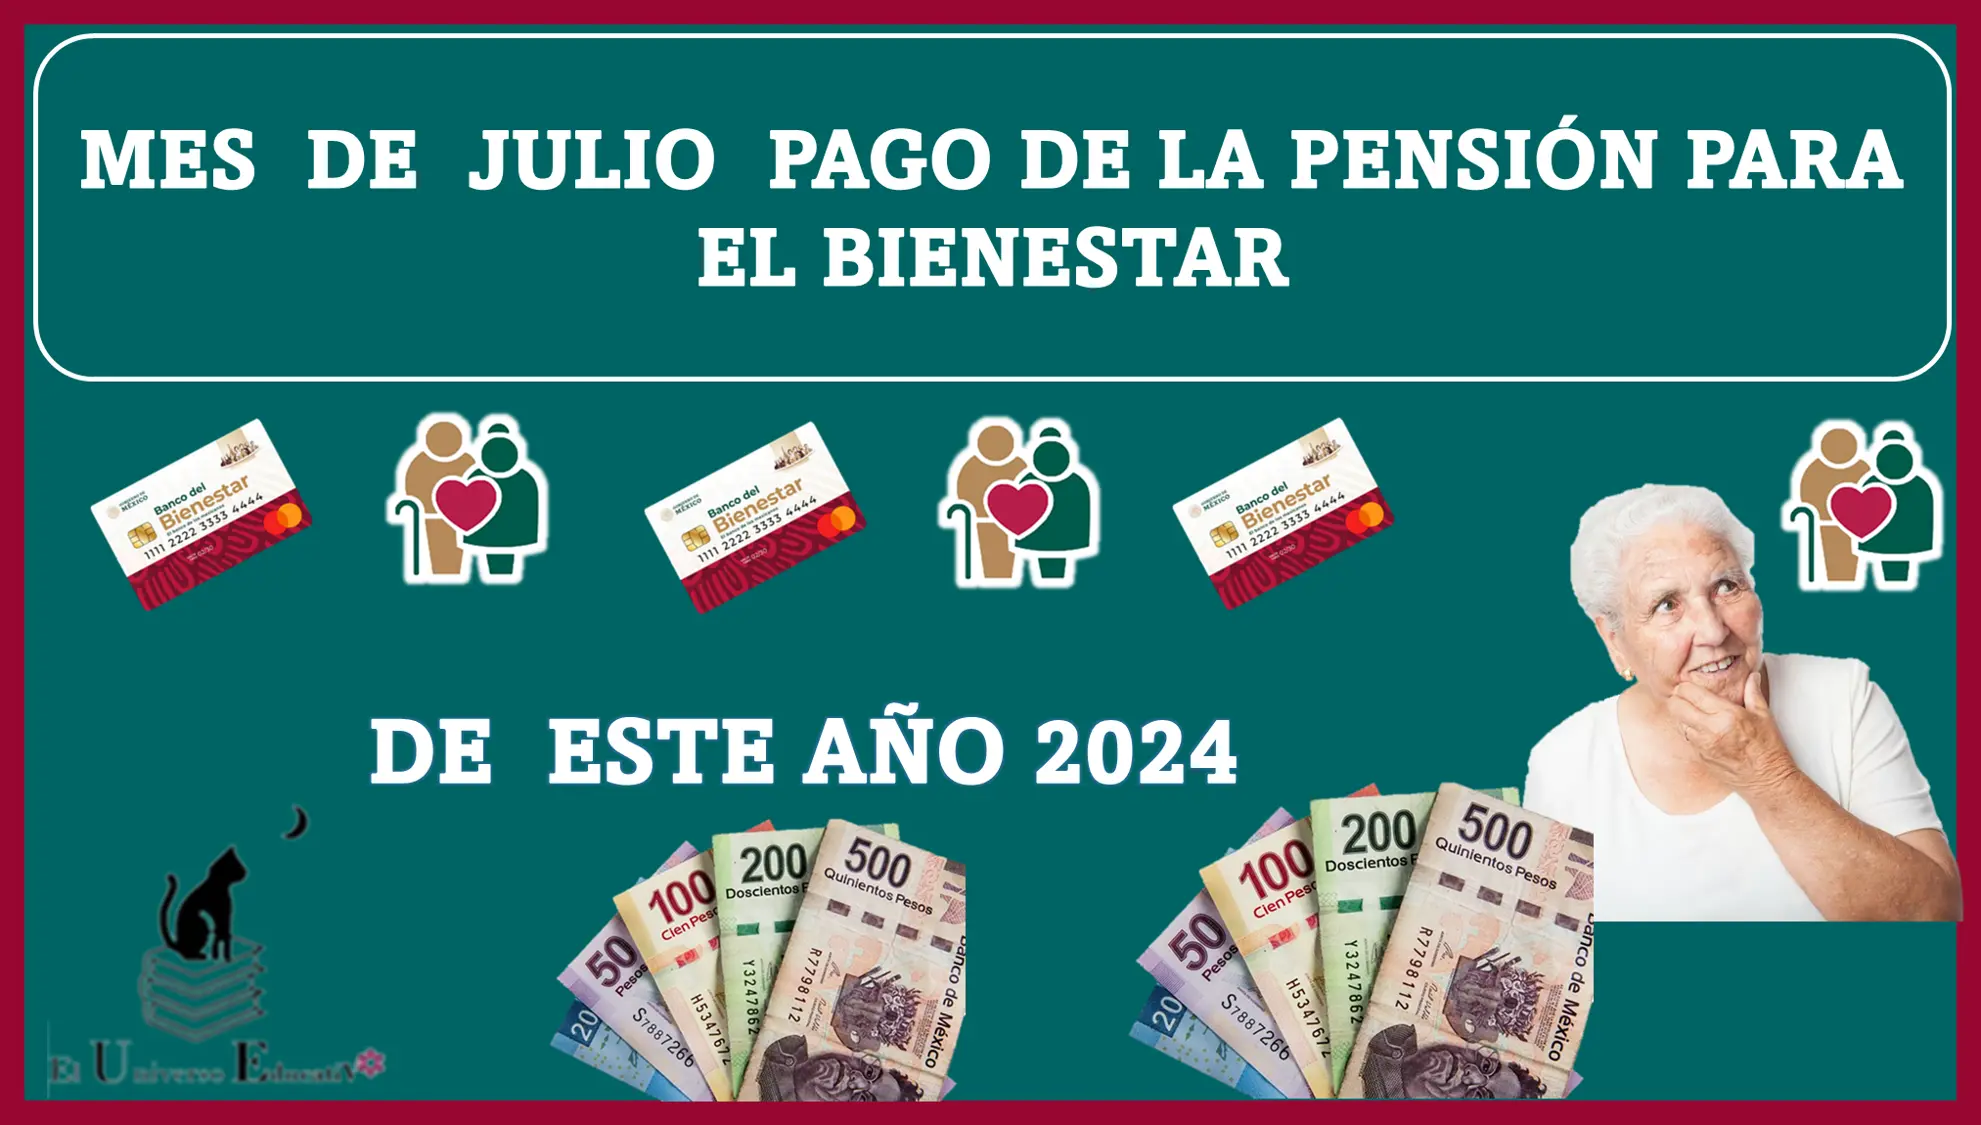 MES DE JULIO PAGO DE LA PENSIÓN PARA EL BIENESTAR DE ESTE AÑO 2024